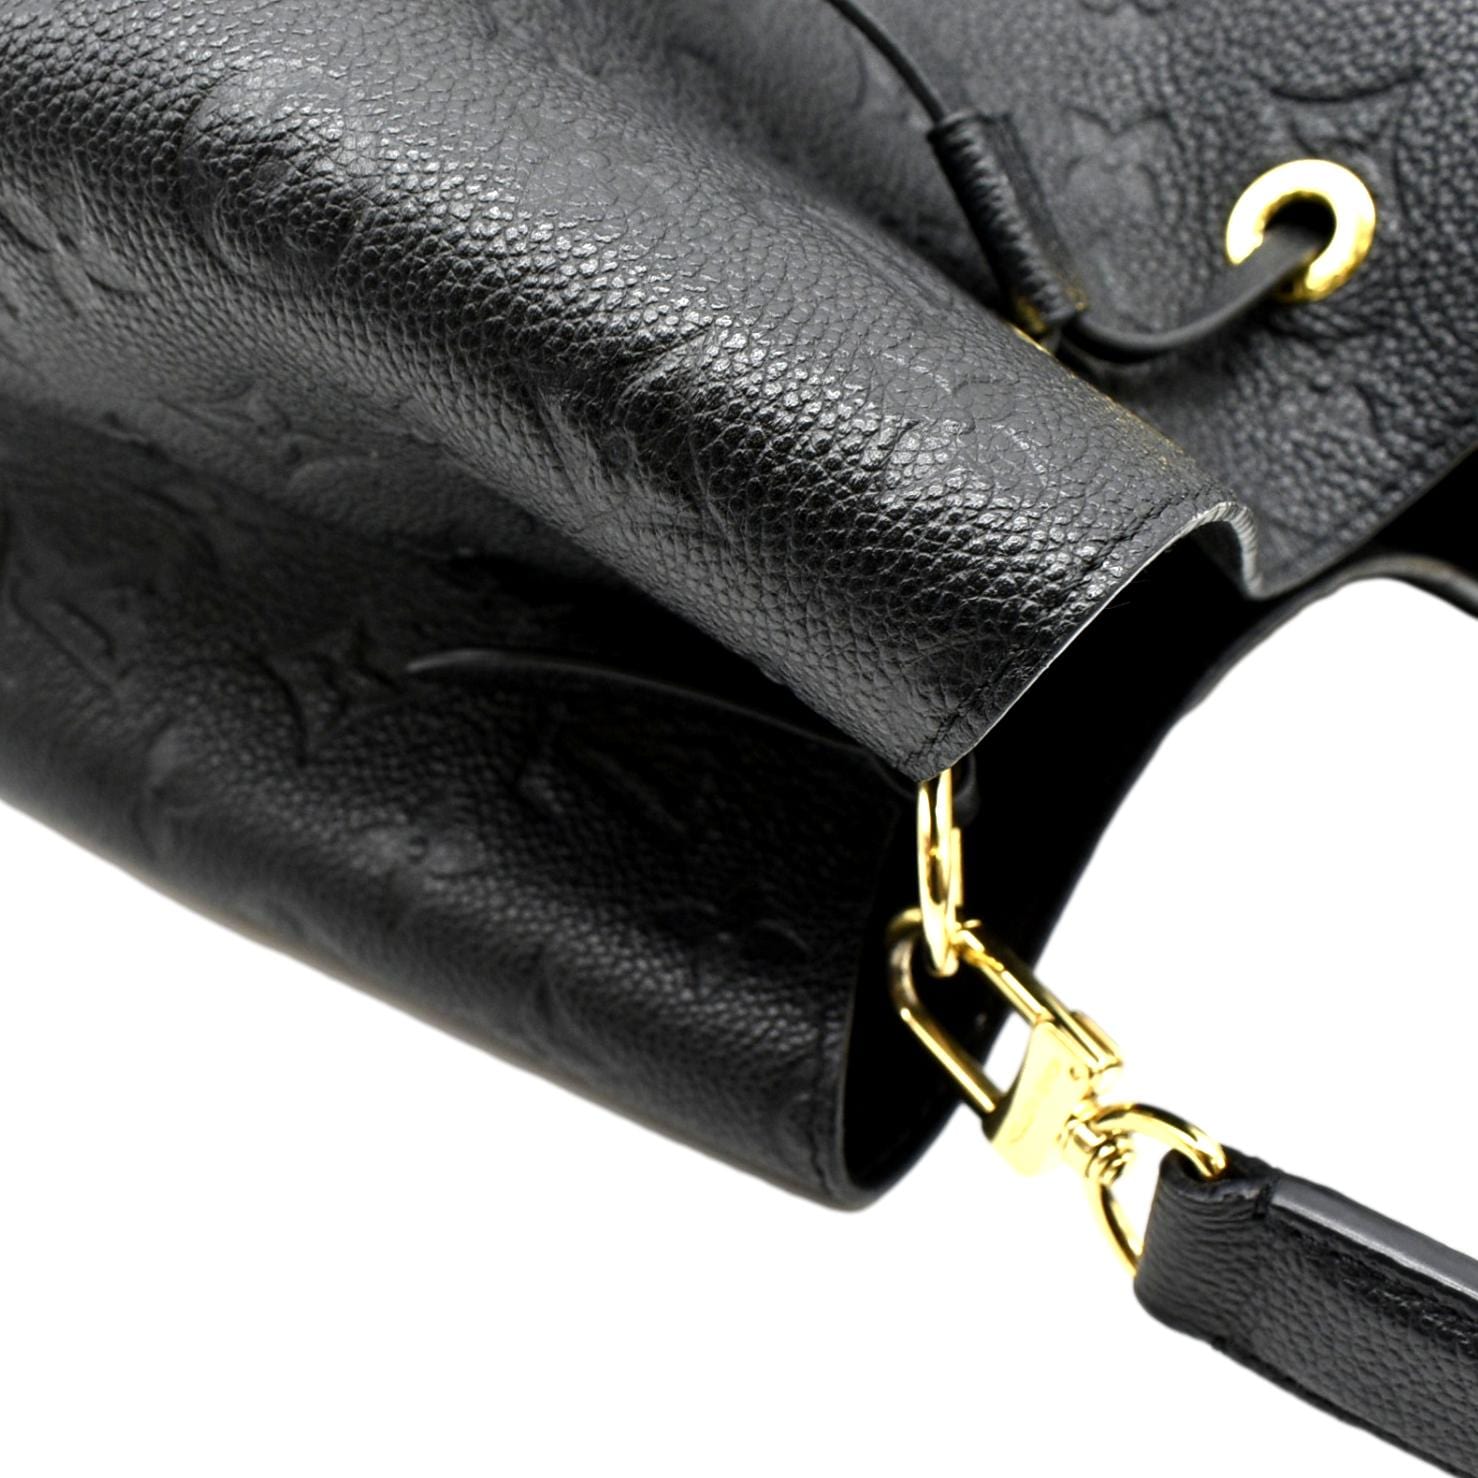 Louis Vuitton Neonoe MM in Empreinte Leather 